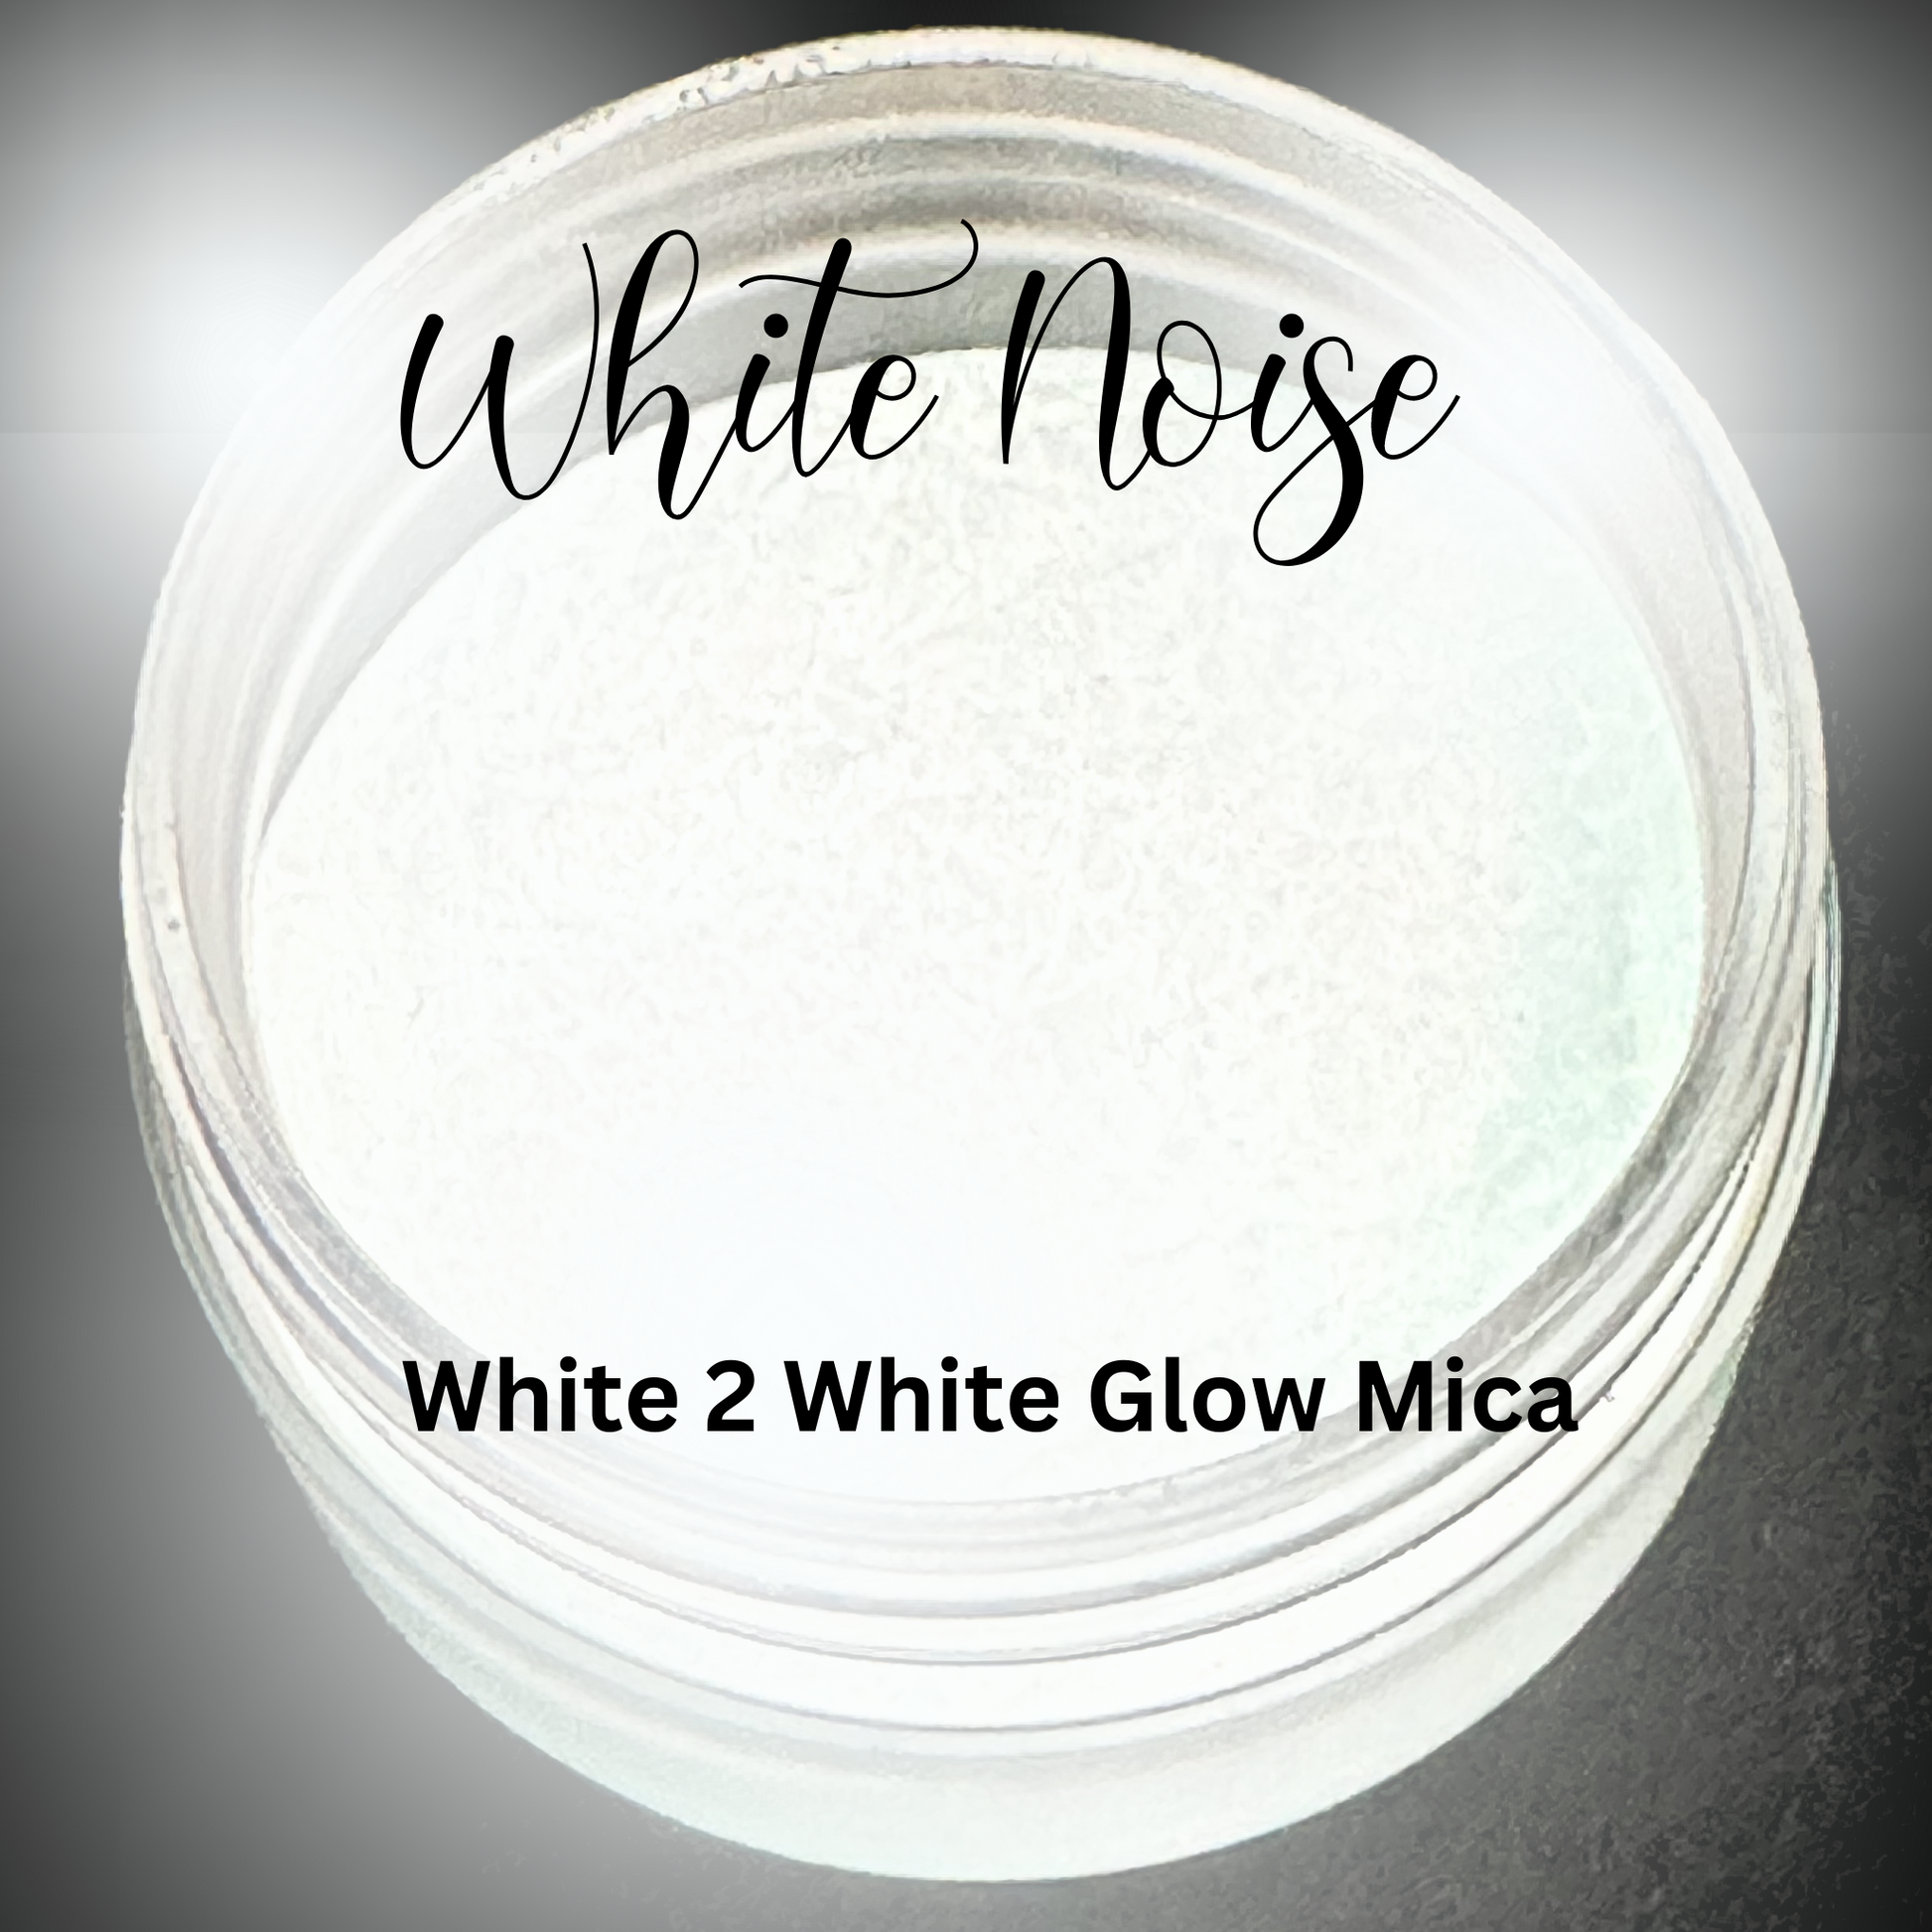 White Noise White to White Glow In the Dark 1 oz Mica Powder – Sparkly  MeMaw LLC